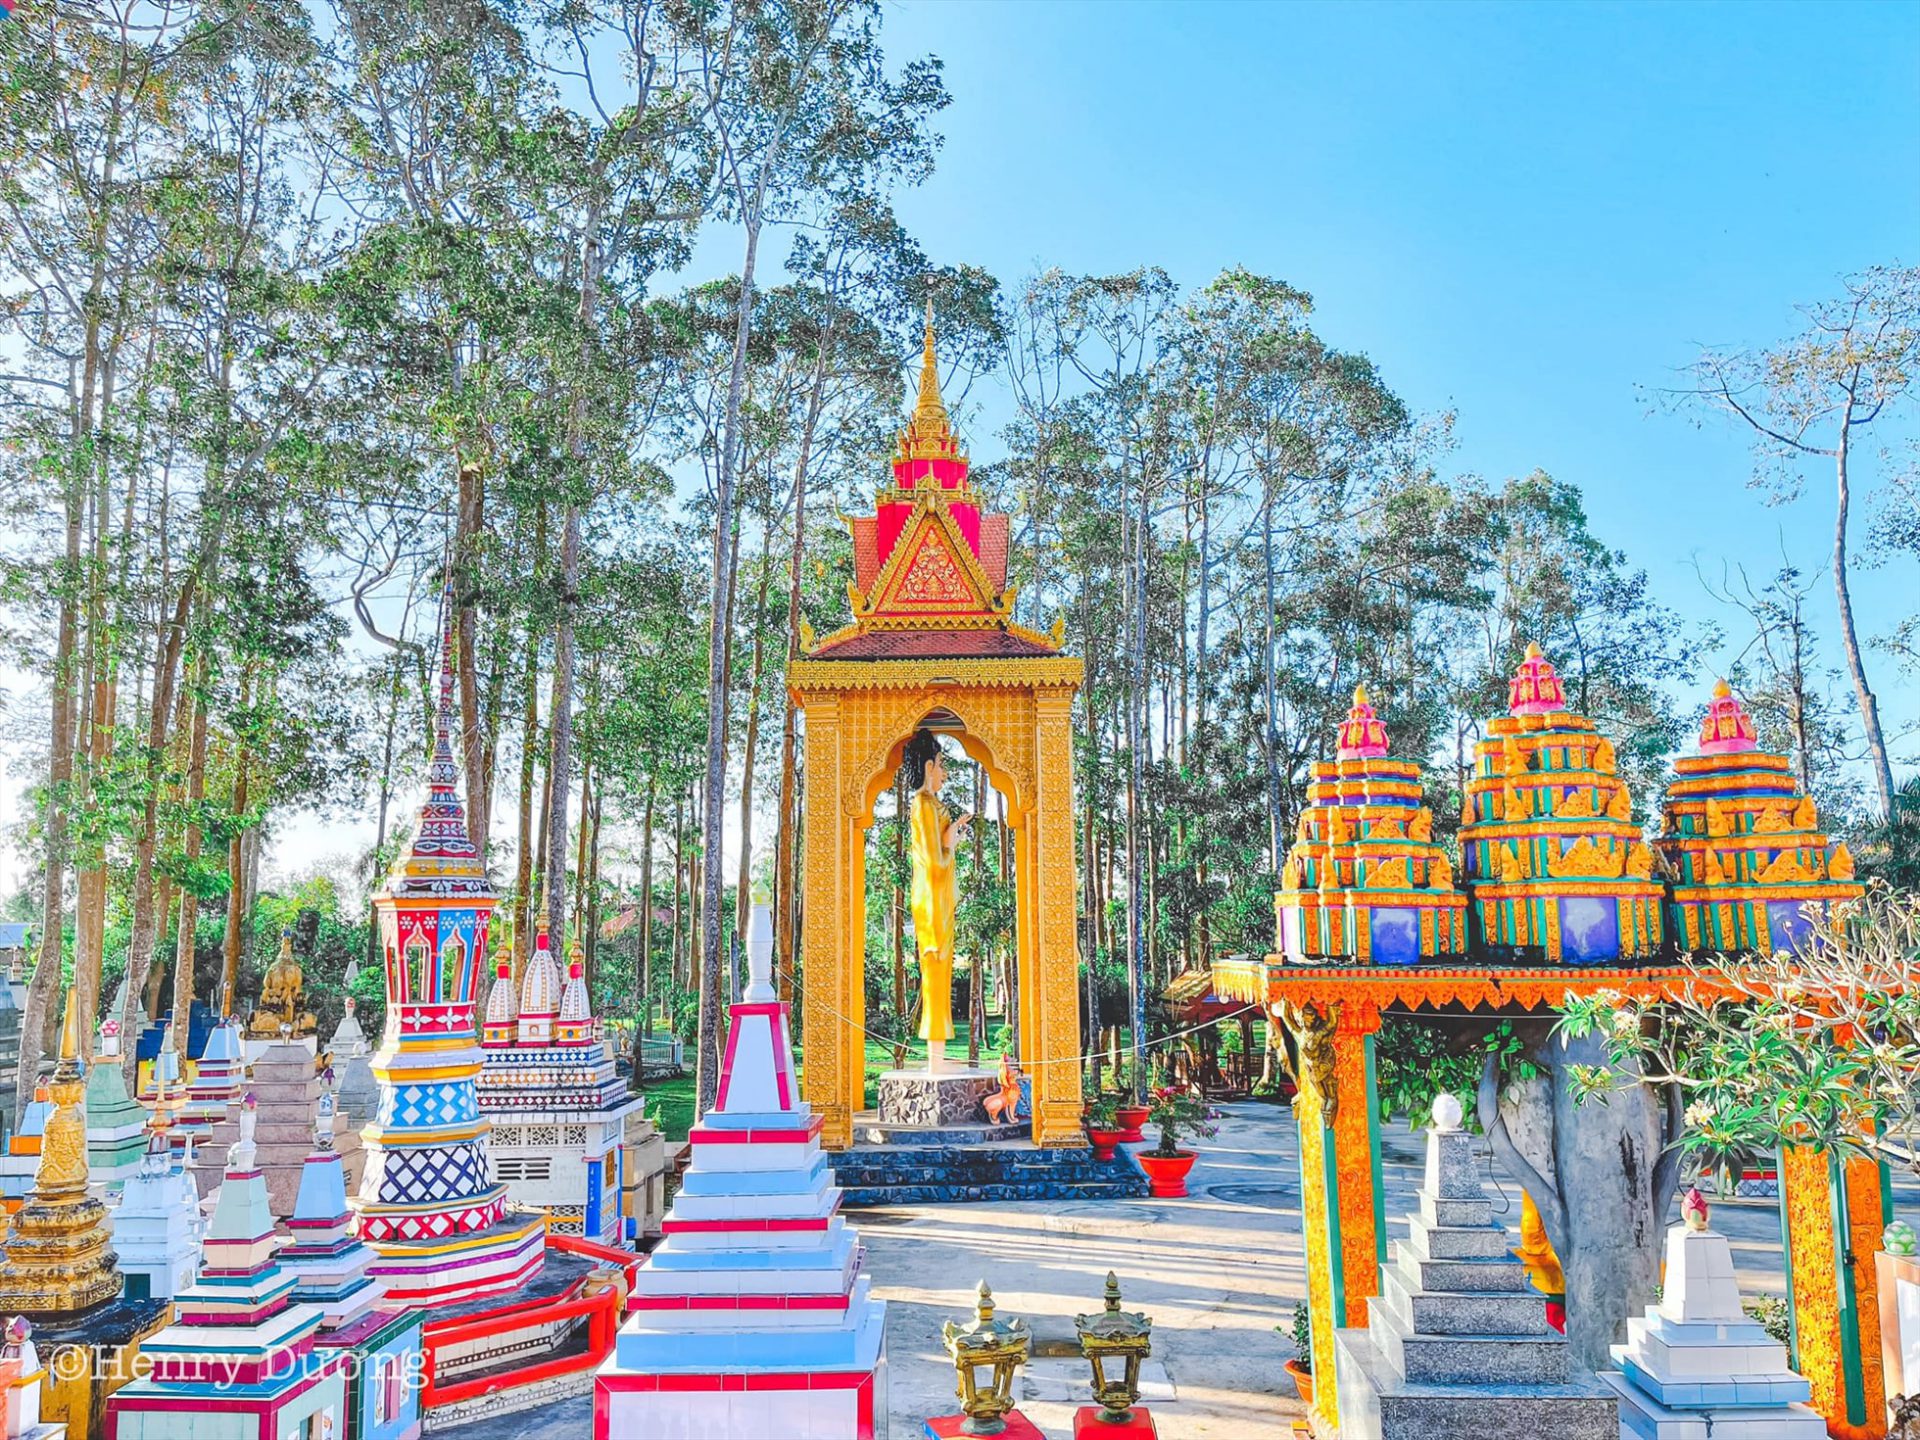 Hậu viện chùa là khu vườn Phật Thích Ca giảng đạo và nhập Niết bàn.  Đây là quần thể kiến trúc gồm nhiều tượng Phật lớn nhỏ, mô phỏng khá sinh động quá trình ra đời, đi tìm chân lý, giác ngộ cho đến khi nhập cõi Niết bàn của đức Phật Thích Ca.